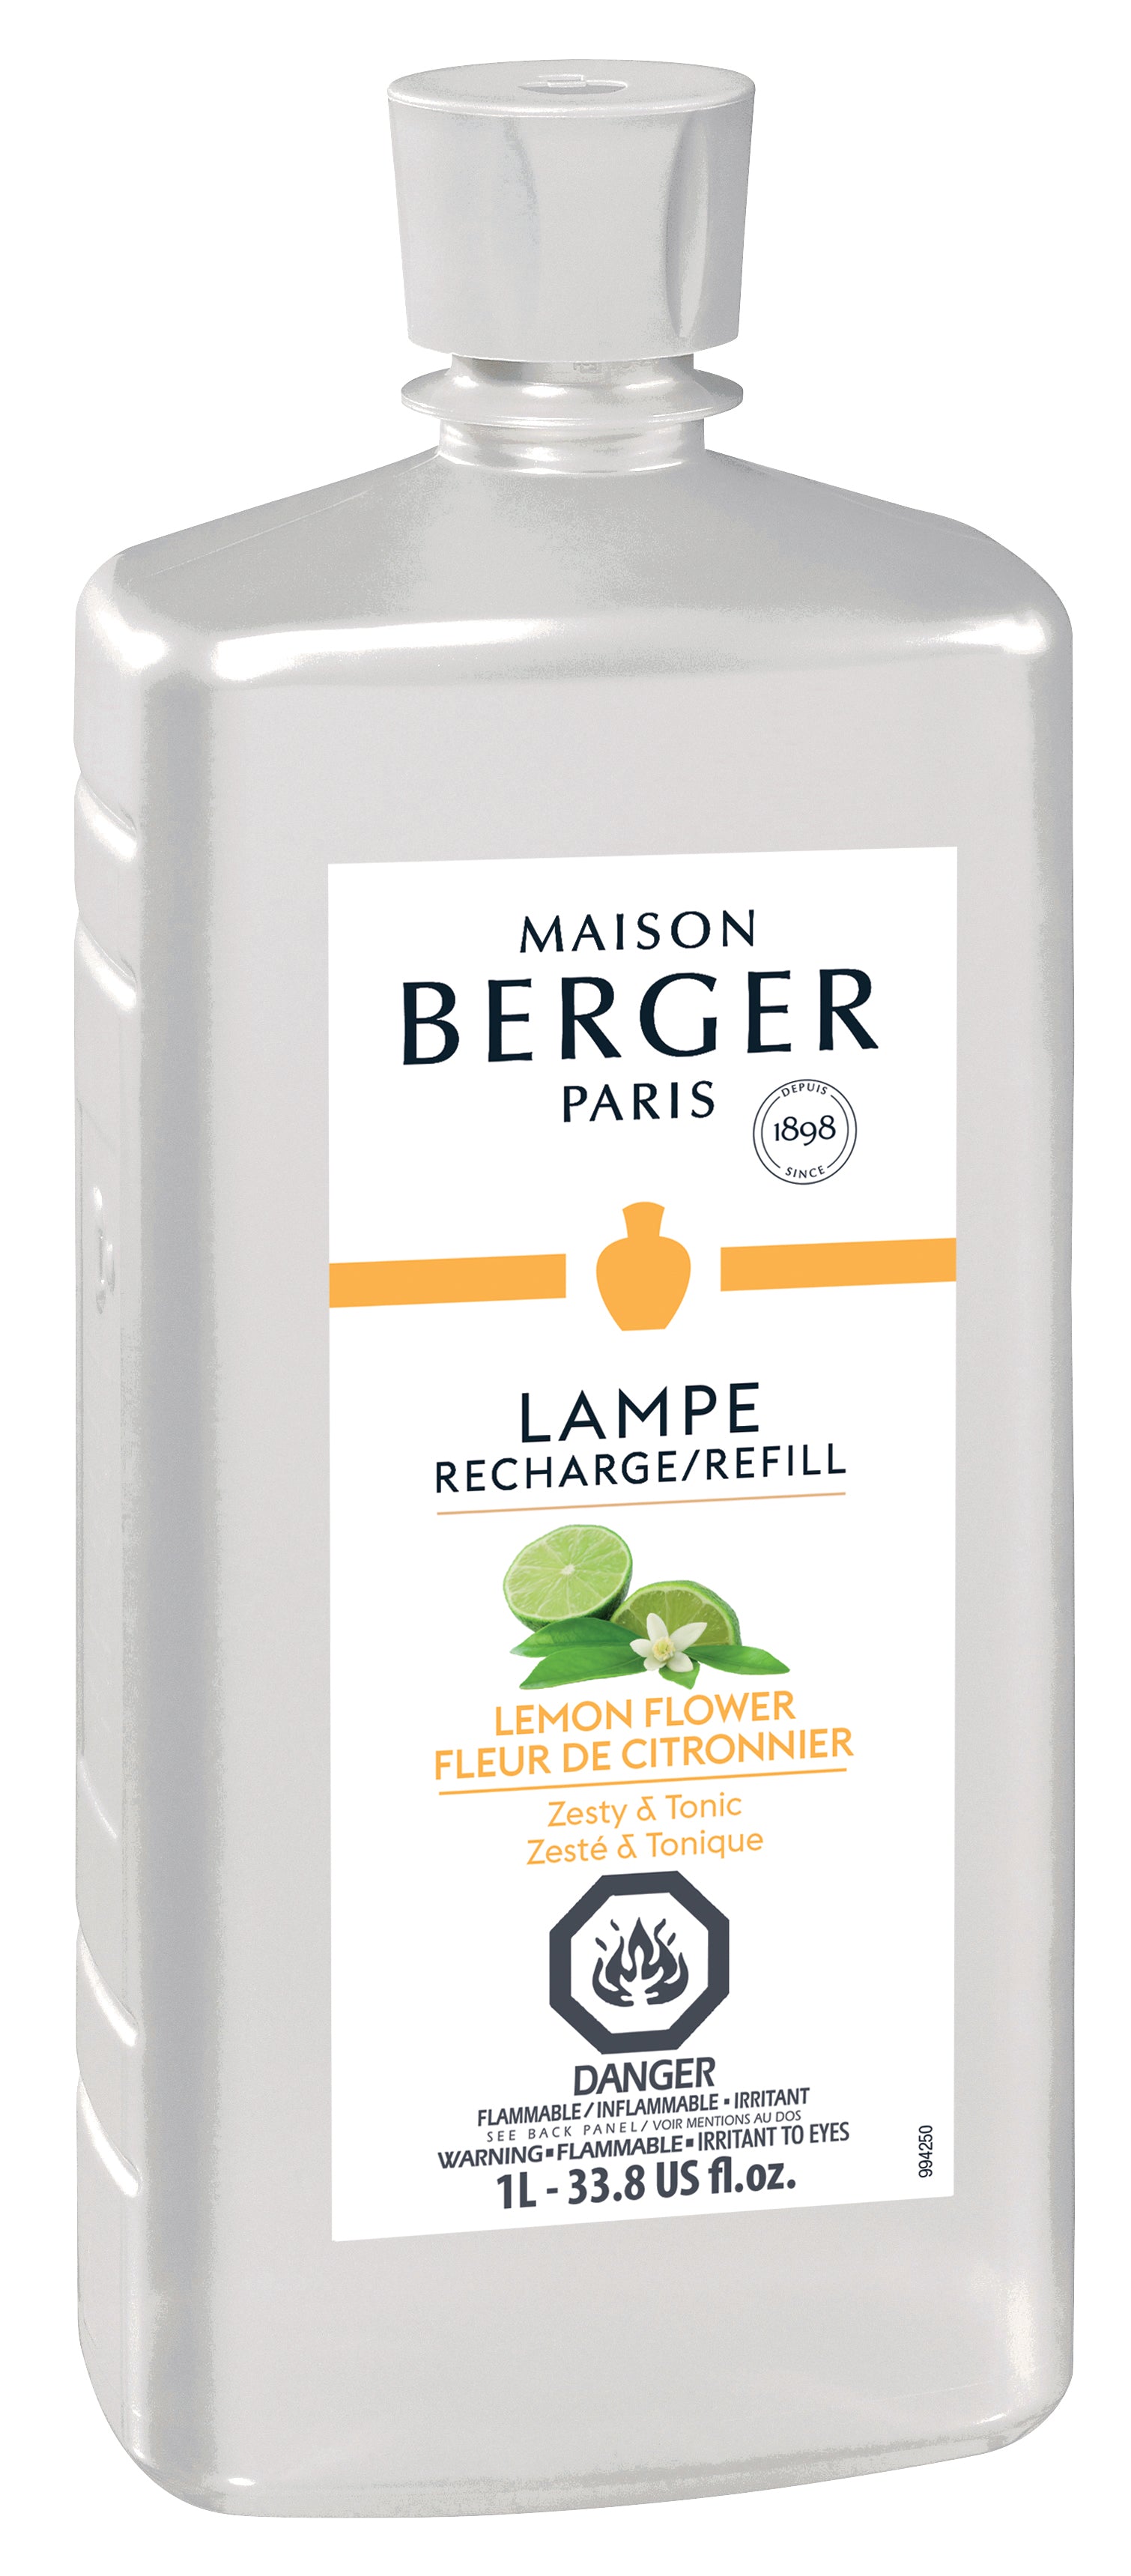 Lampe Berger Parfum De Maison Refill Paris Chic (500ml) au